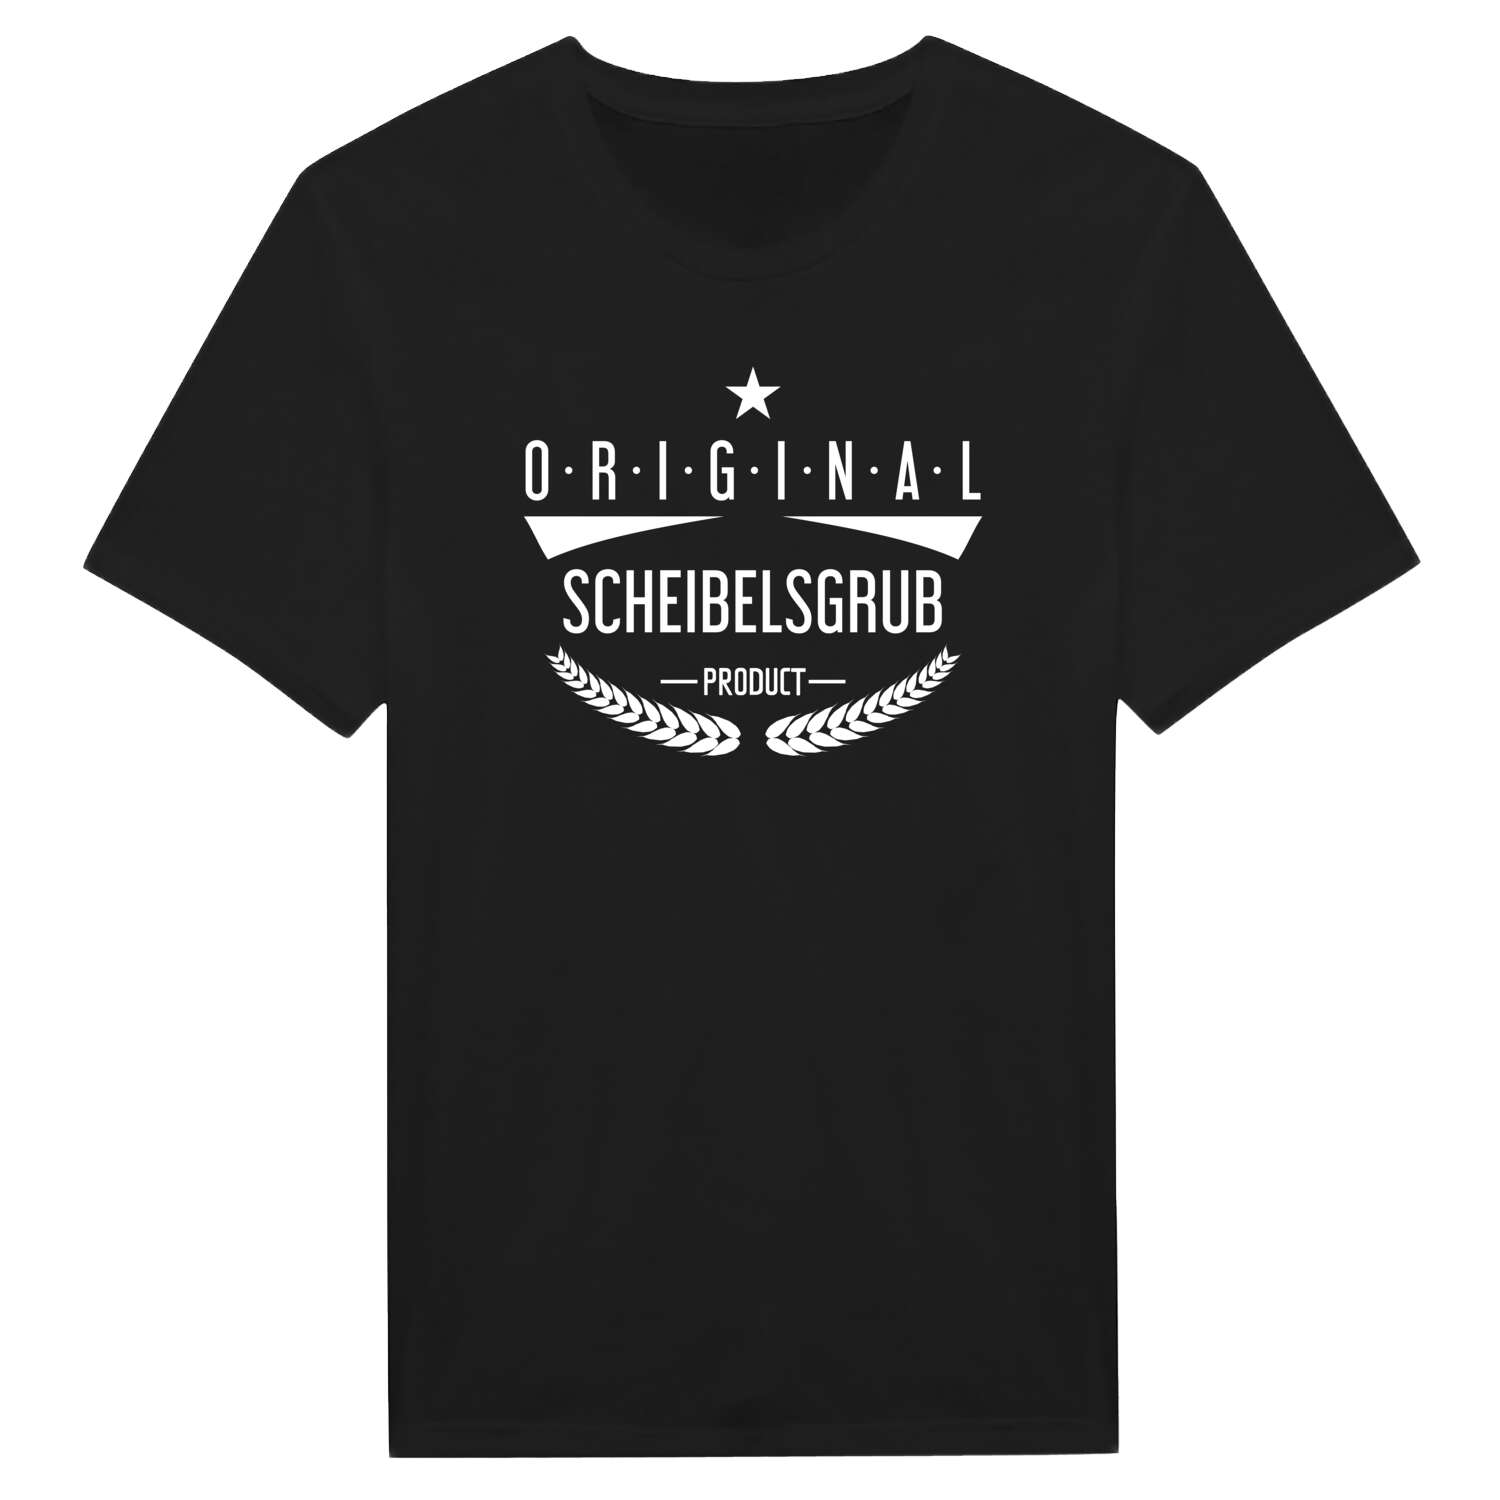 Scheibelsgrub T-Shirt »Original Product«